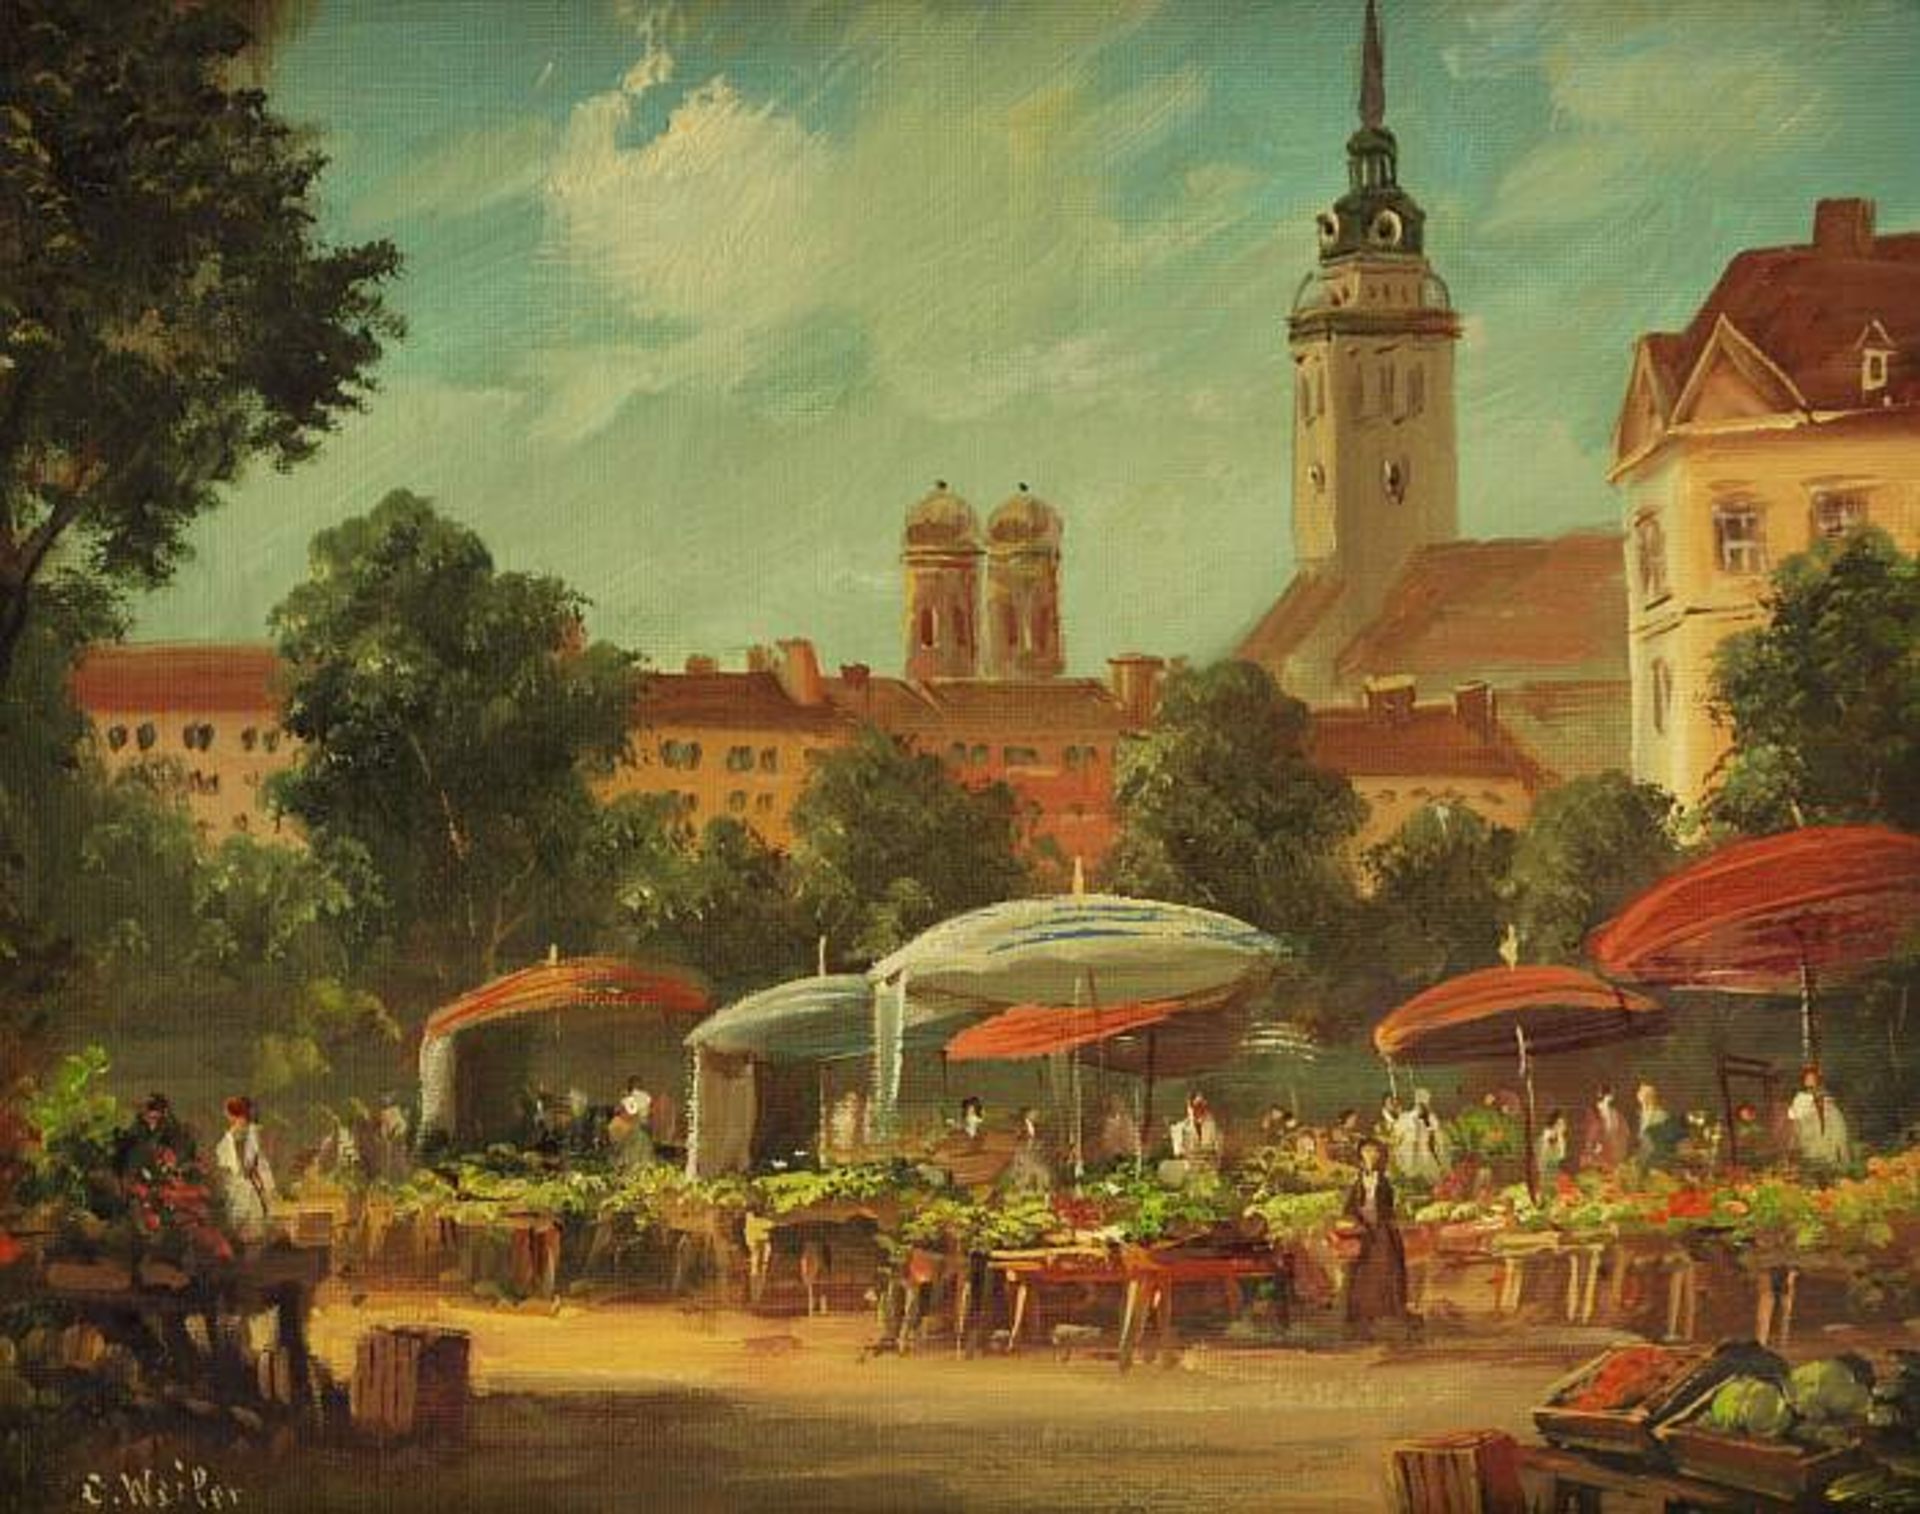 WEILER, C. WEILER, C. 1927 München. Blick auf den Viktualienmarkt. Öl auf Holz, links unten